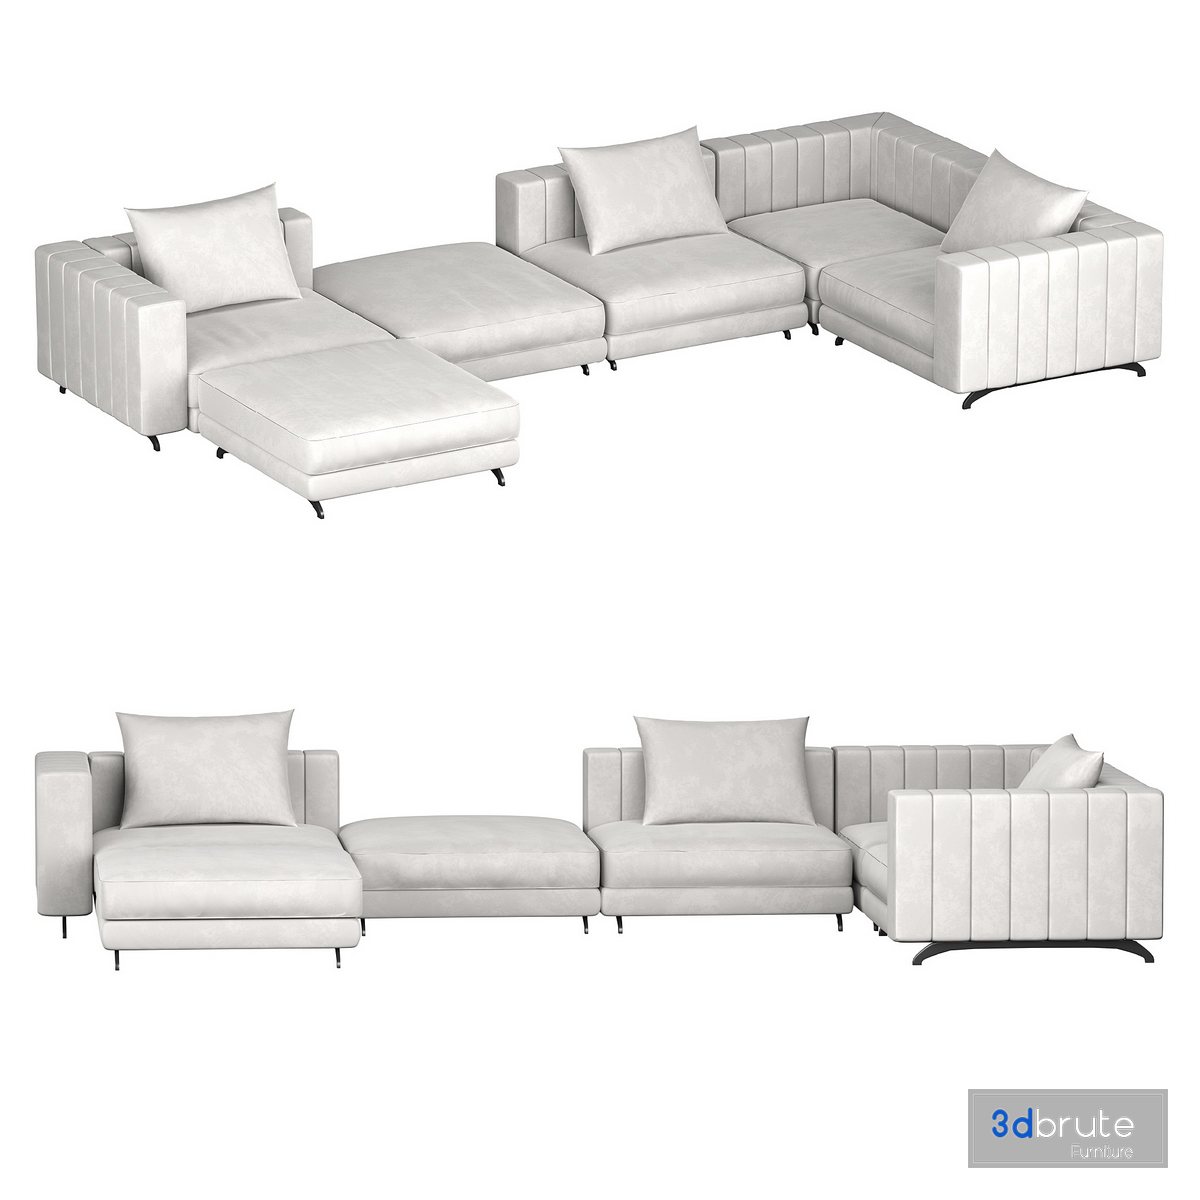 Berlin Modular Sectional sofa 3d model Buy Download 3dbrute